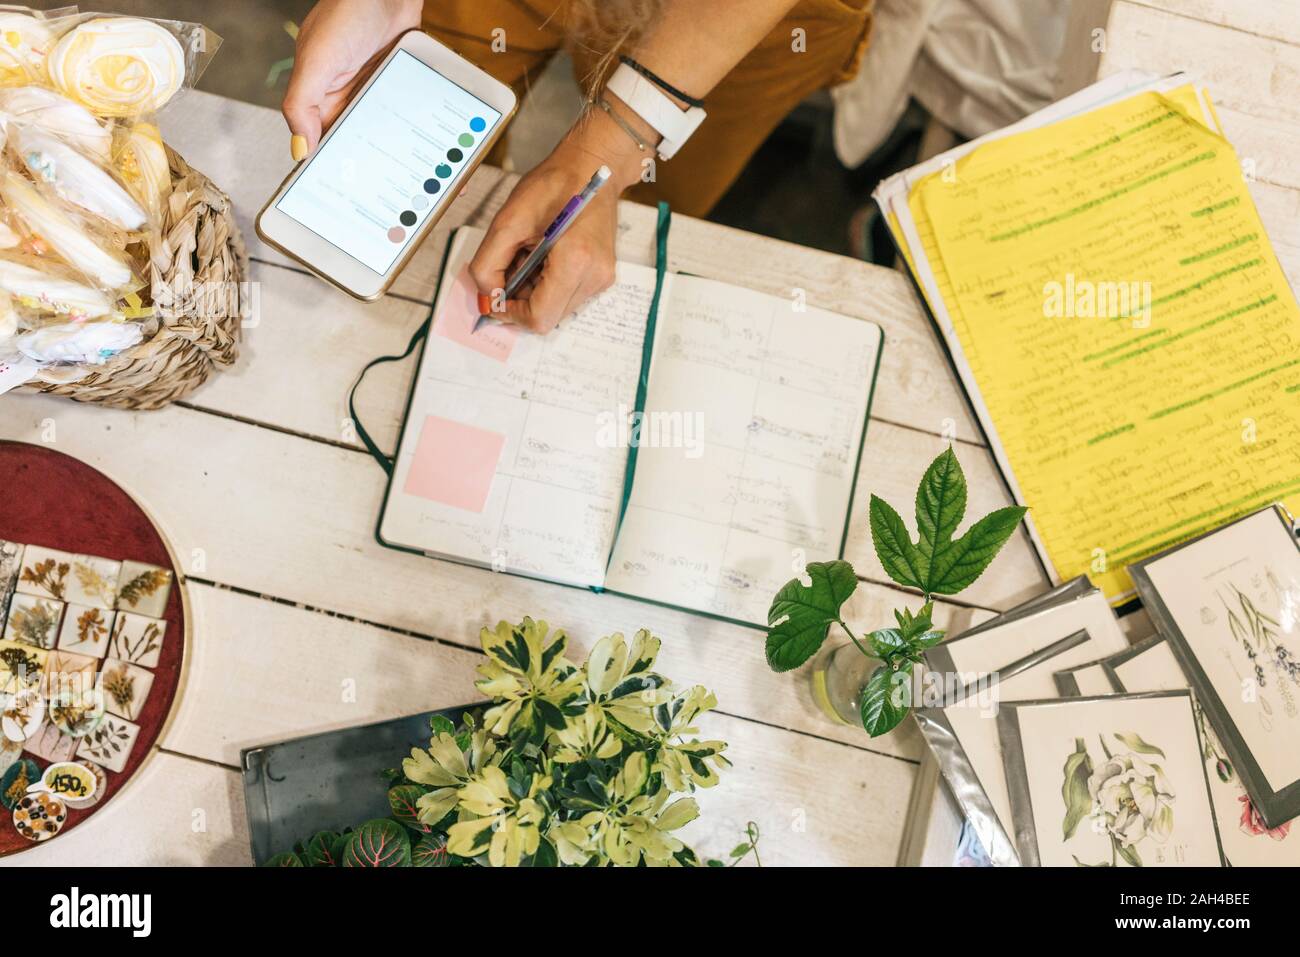 Top View of woman with smartphone en prenant des notes dans un petit magasin de jardinage Banque D'Images